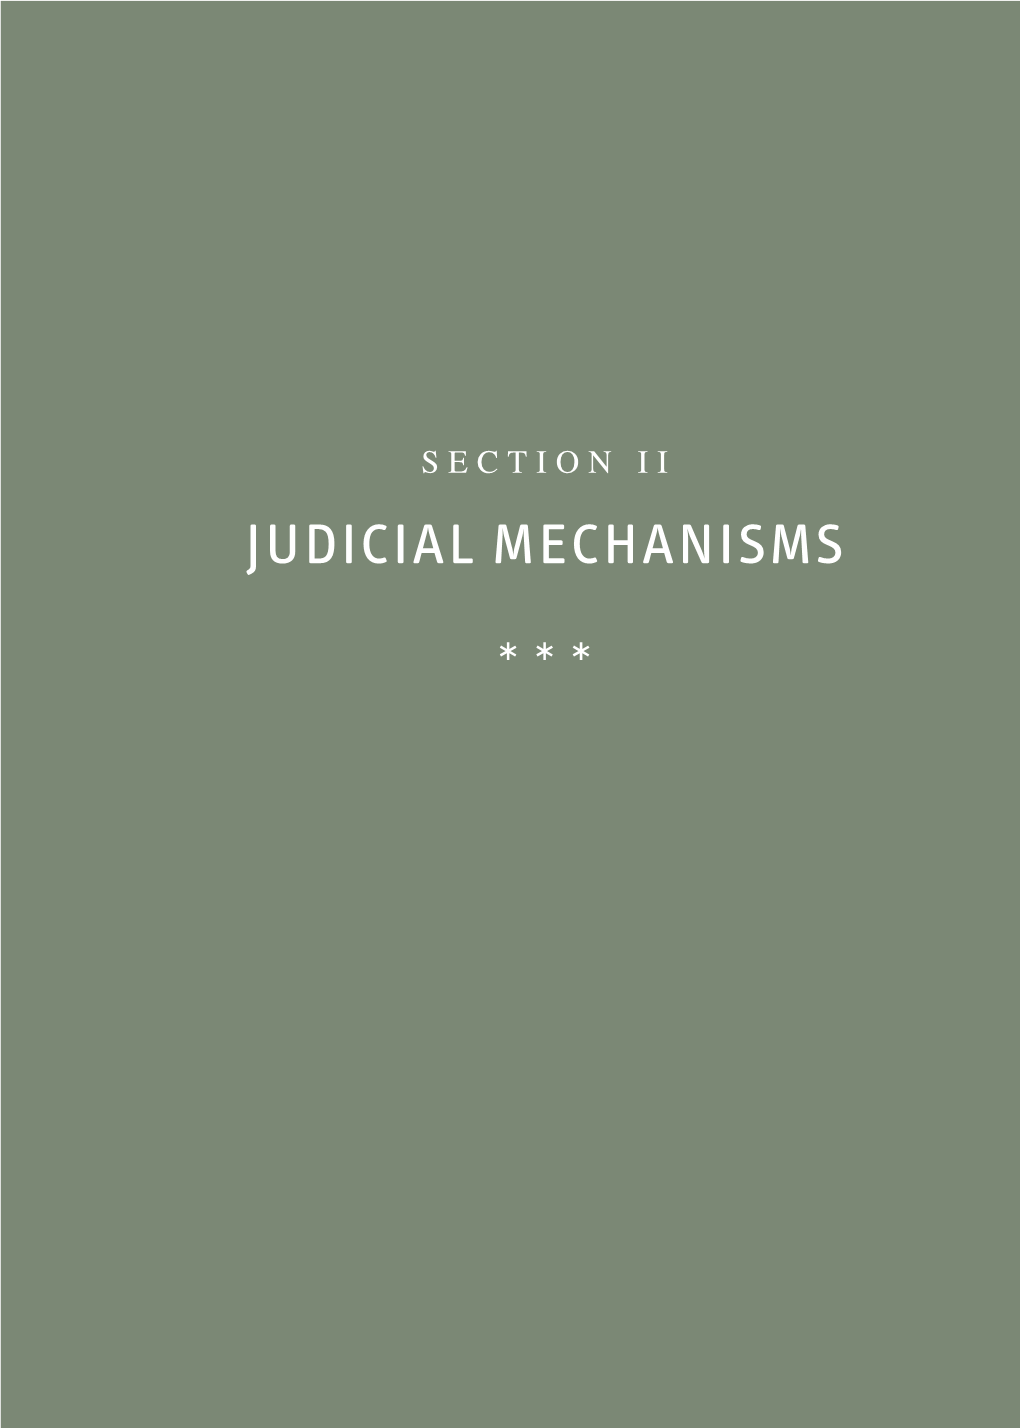 Judicial Mechanisms * * *